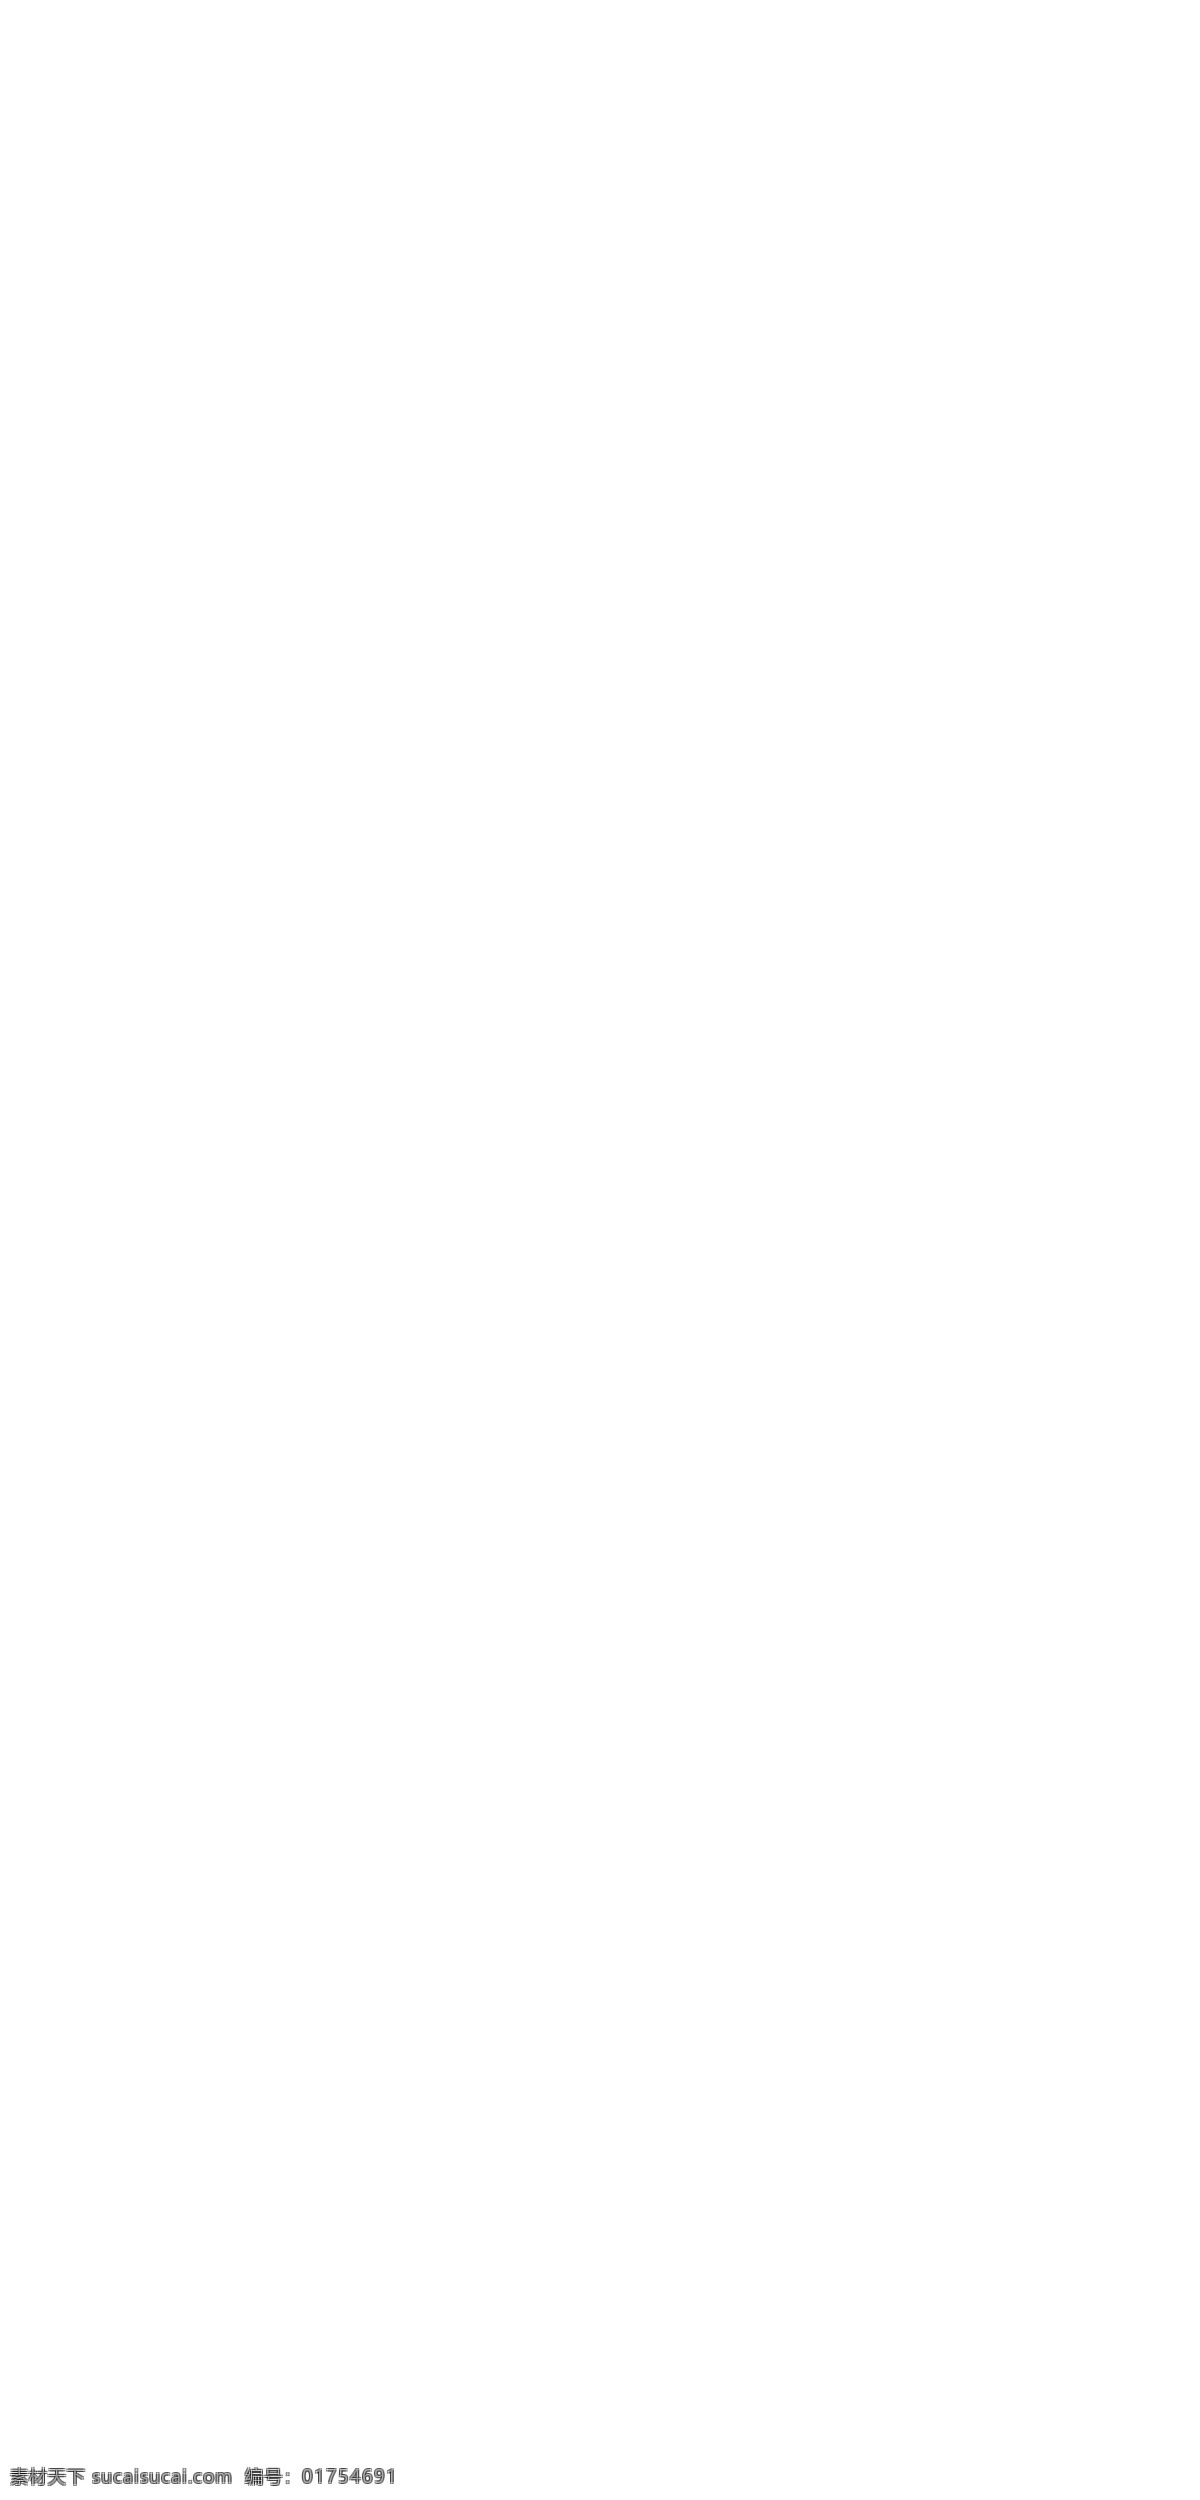 淘宝 植物 精油 网店 网页 模 ui设计 版式设计 界面设计 网页版式 网站菜单 商务网站 模板 网站 分层 女性 护肤品 天猫 化妆品 页面 网站焦点图 淘宝装修网店 psd源文件